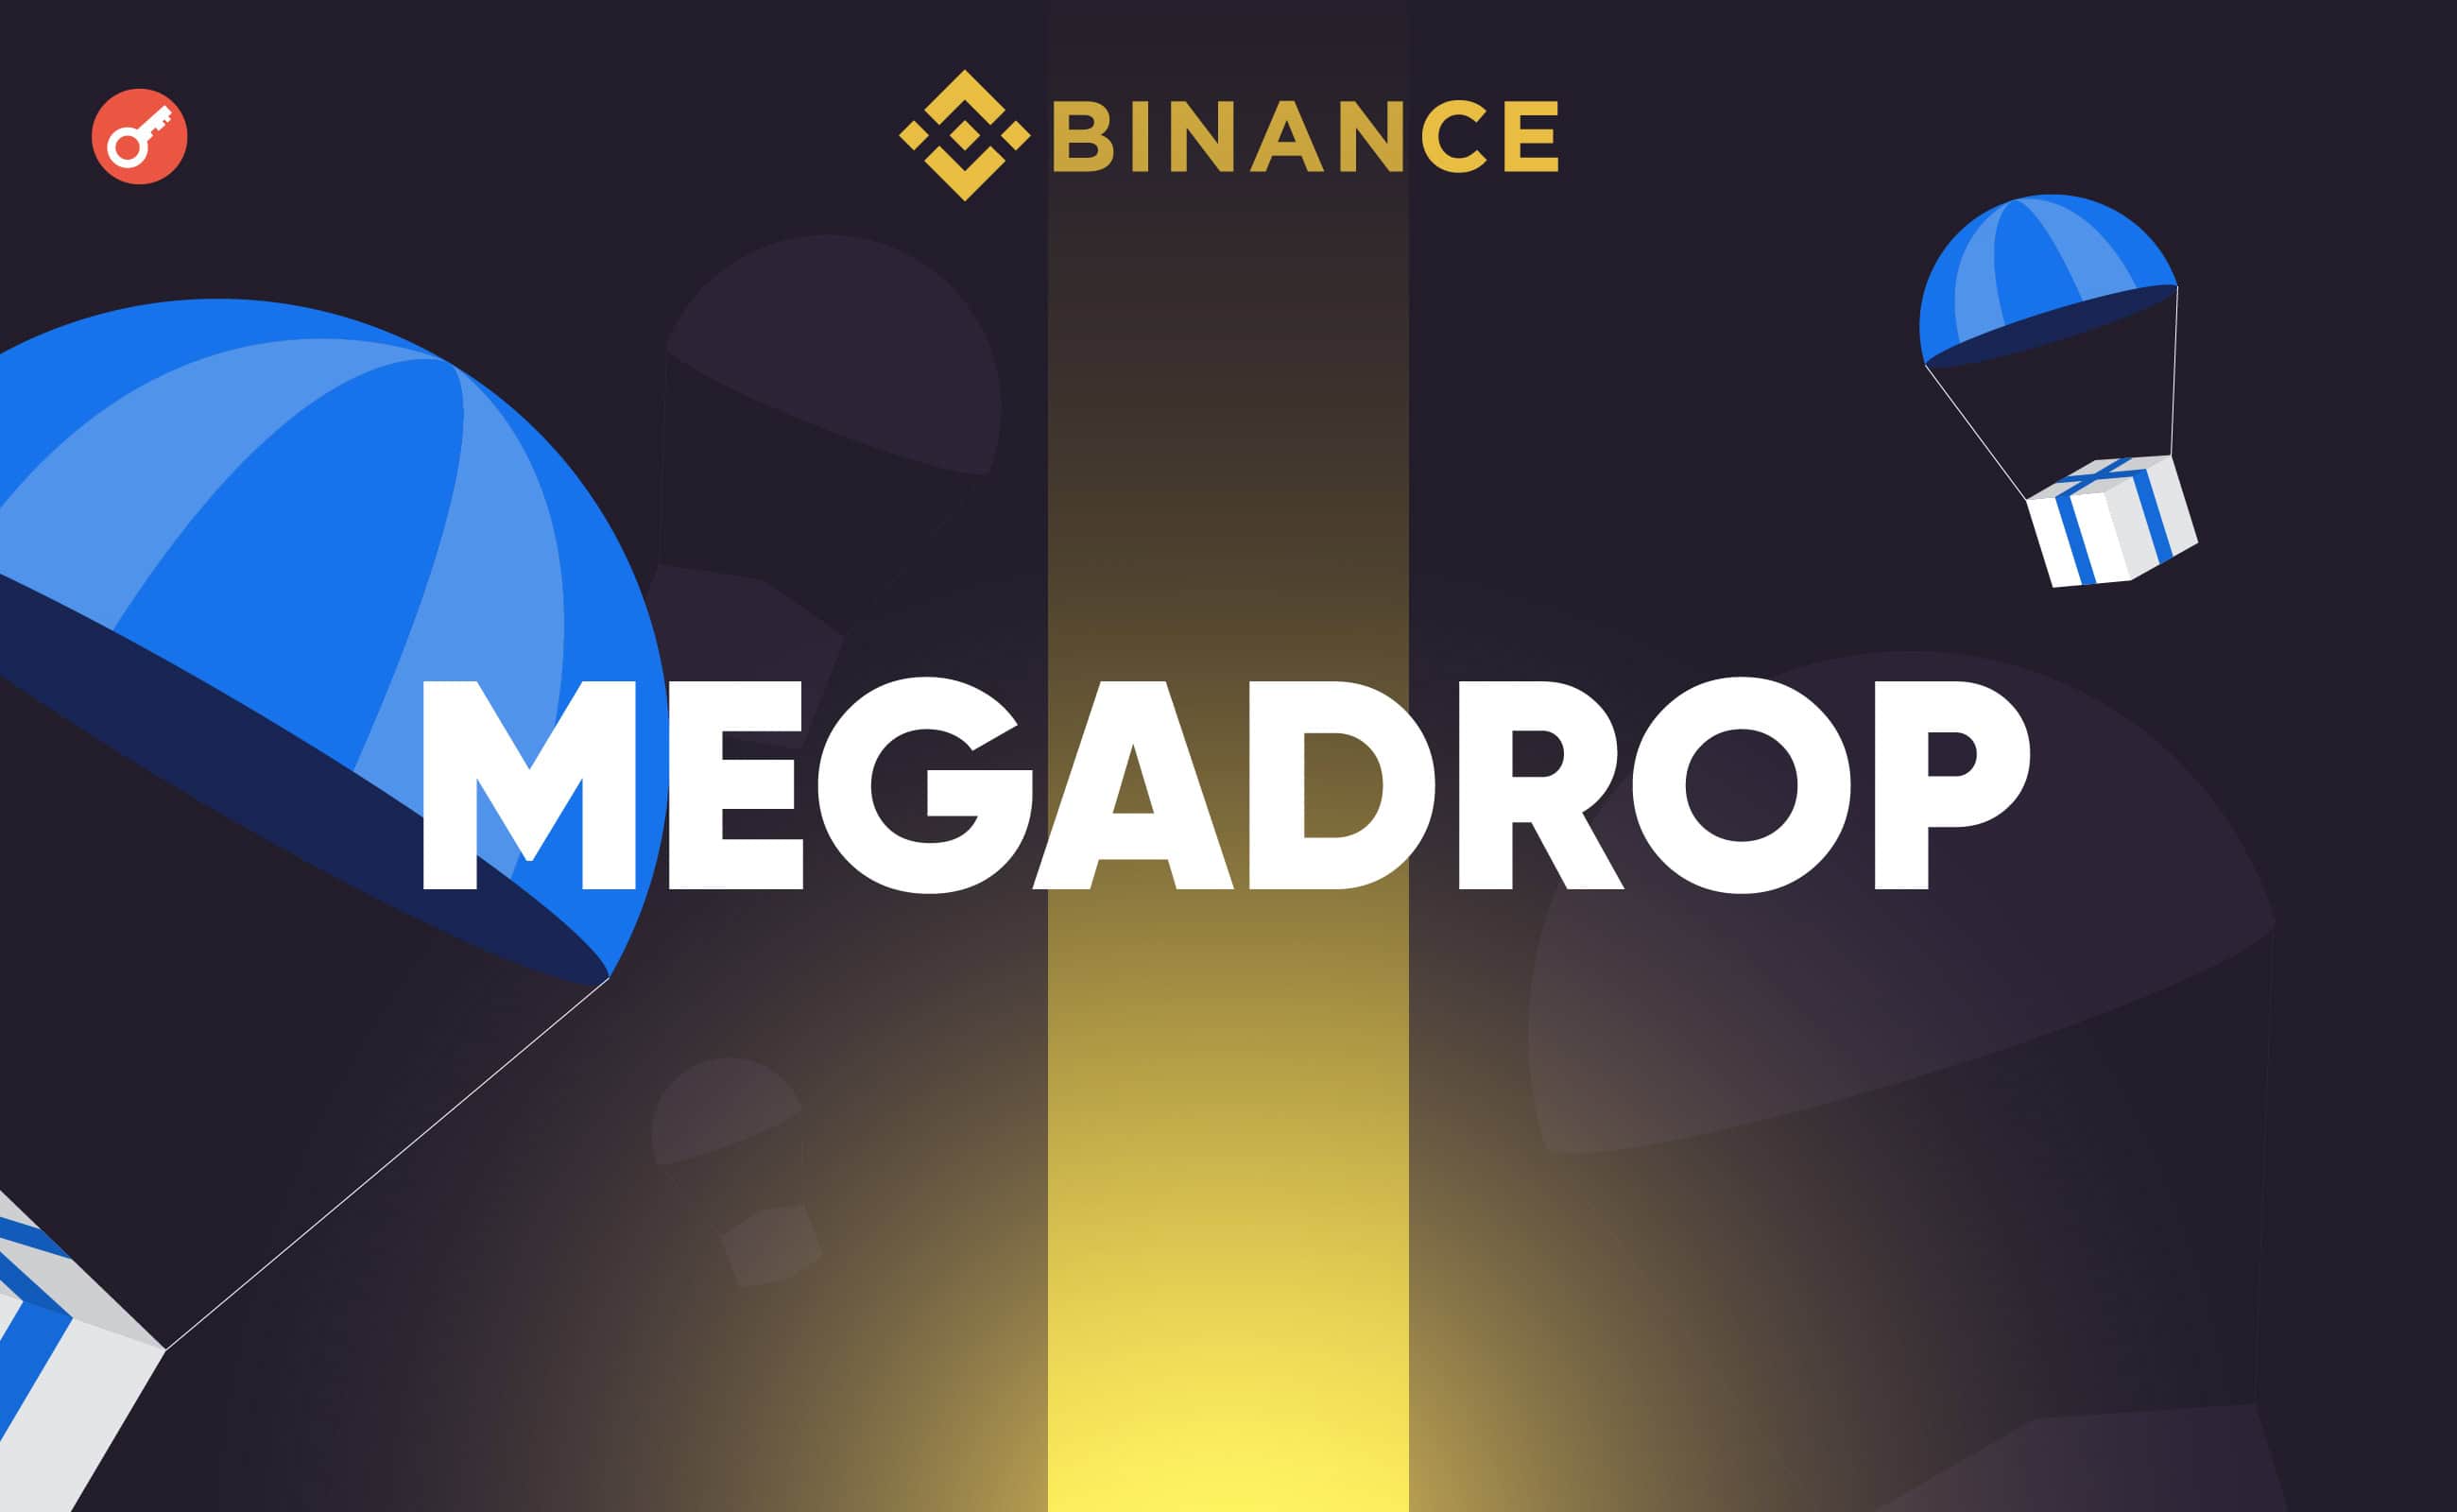 Binance запустила платформу Megadrop для аирдропов и Web3-квестов. Заглавный коллаж новости.